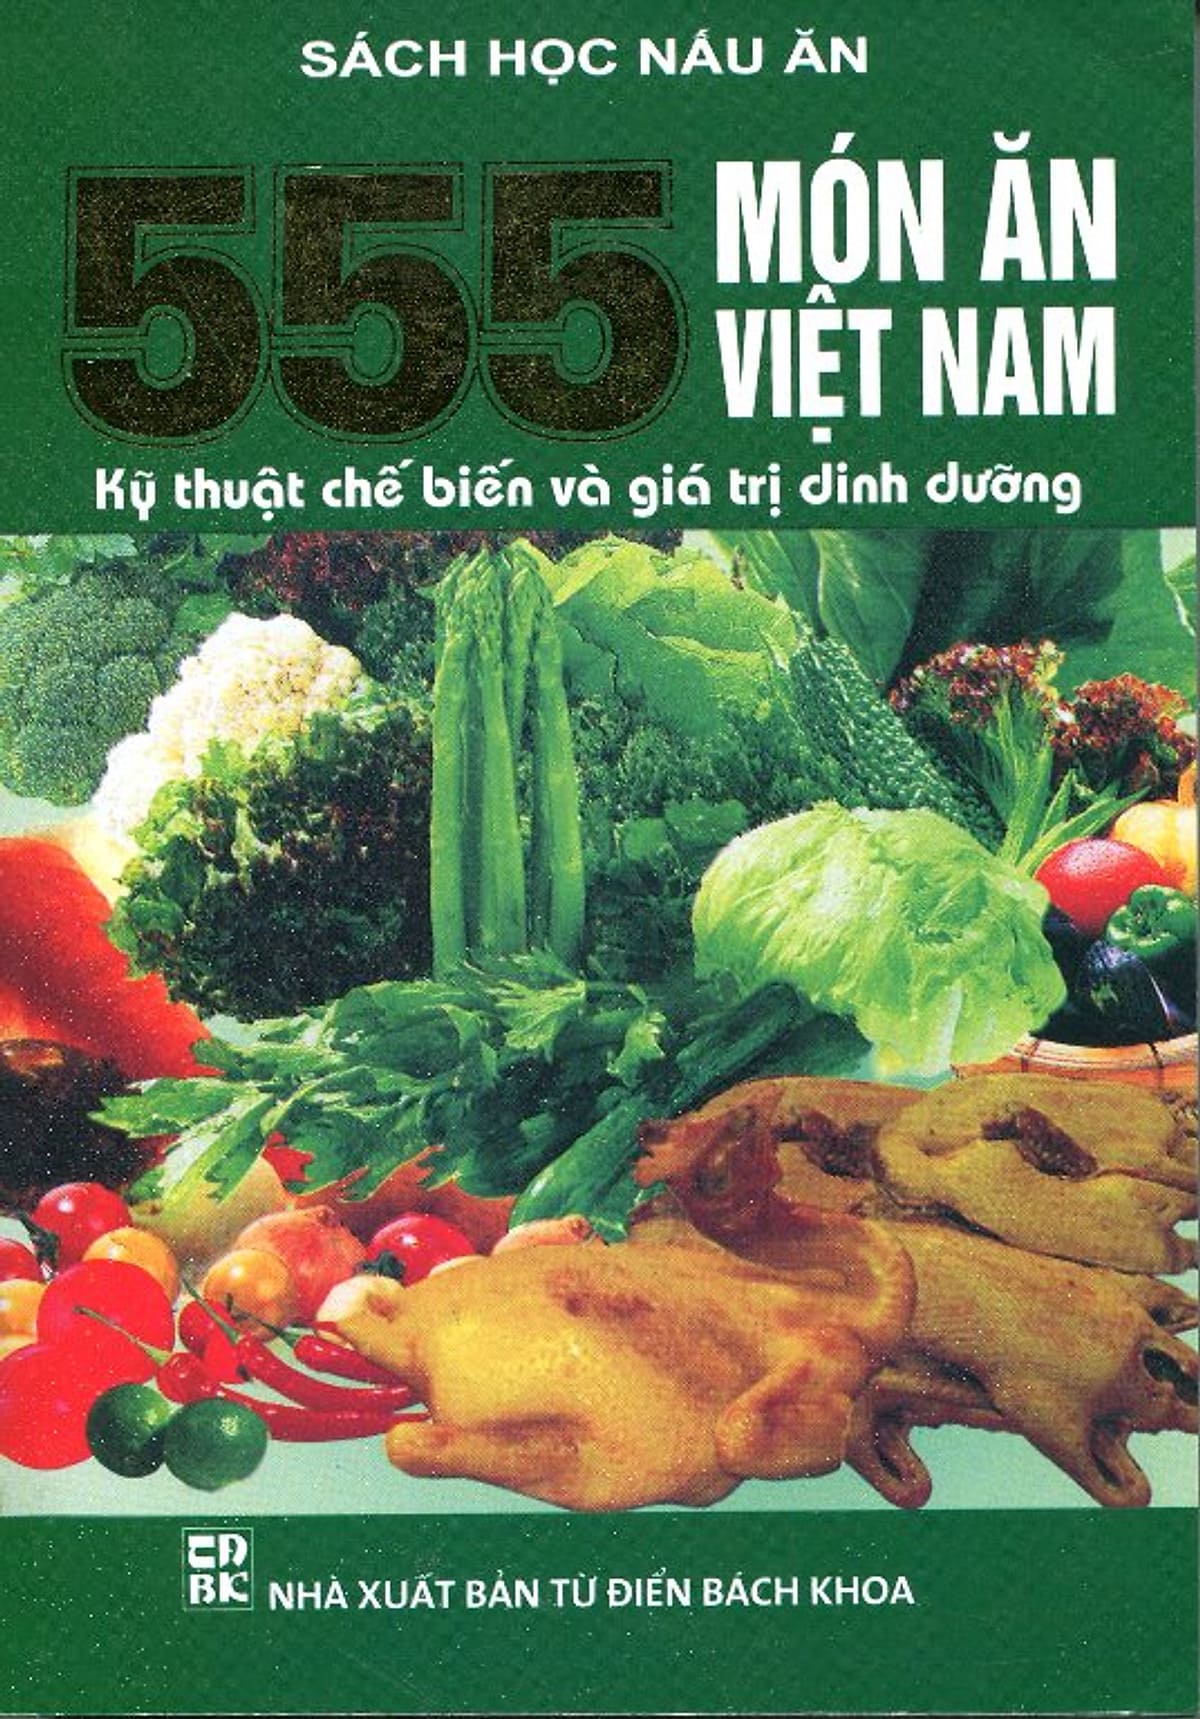 Sách dạy những món ăn ngon Việt Nam